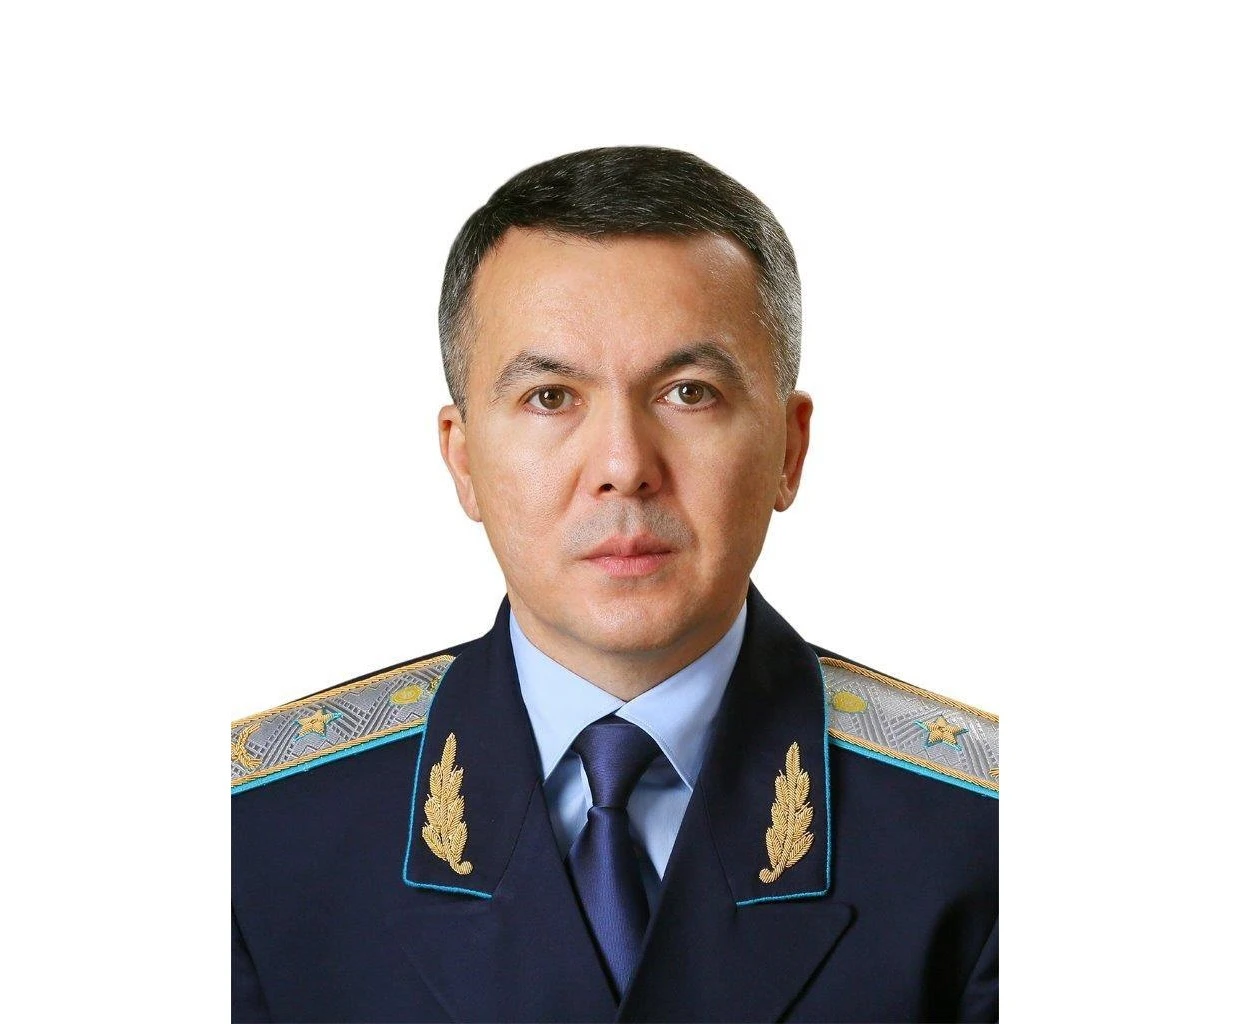 Павлодар облысының прокуроры тағайындалды